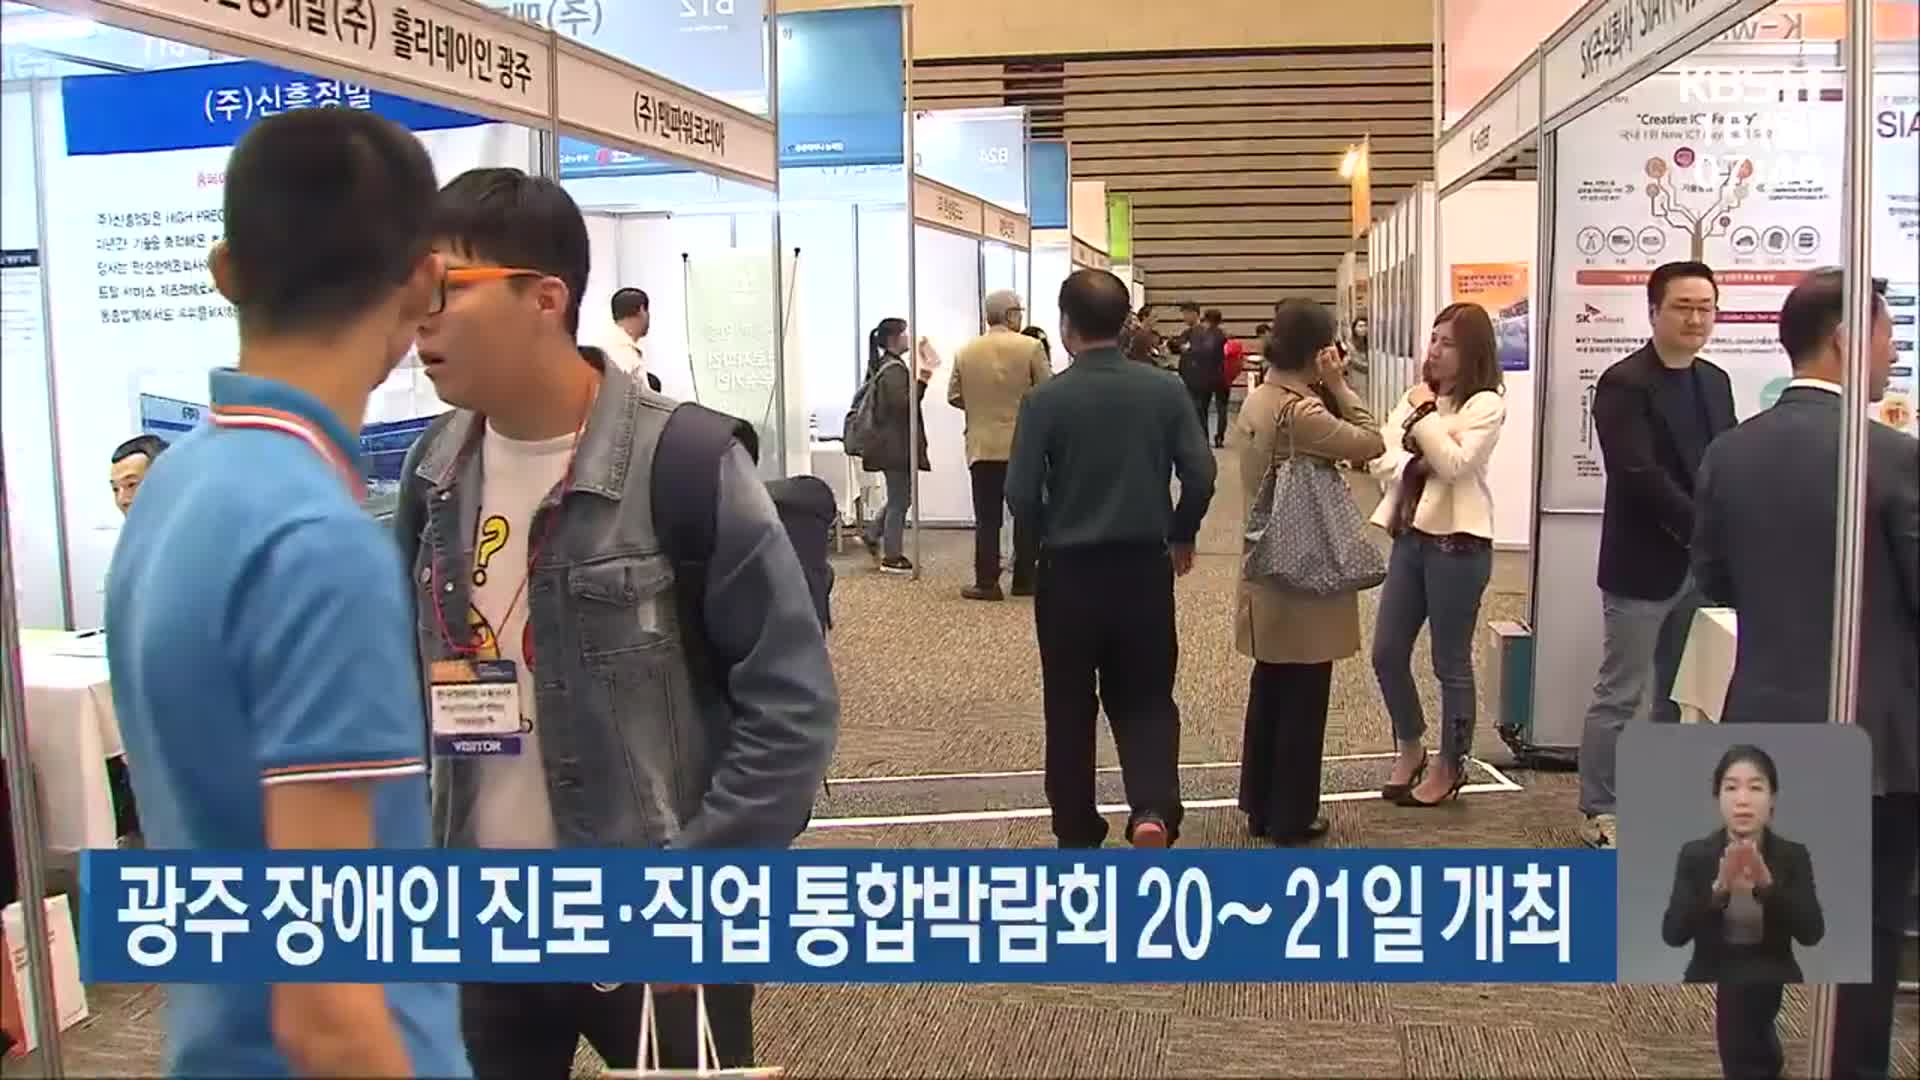 광주 장애인 진로·직업 통합박람회 20∼21일 개최